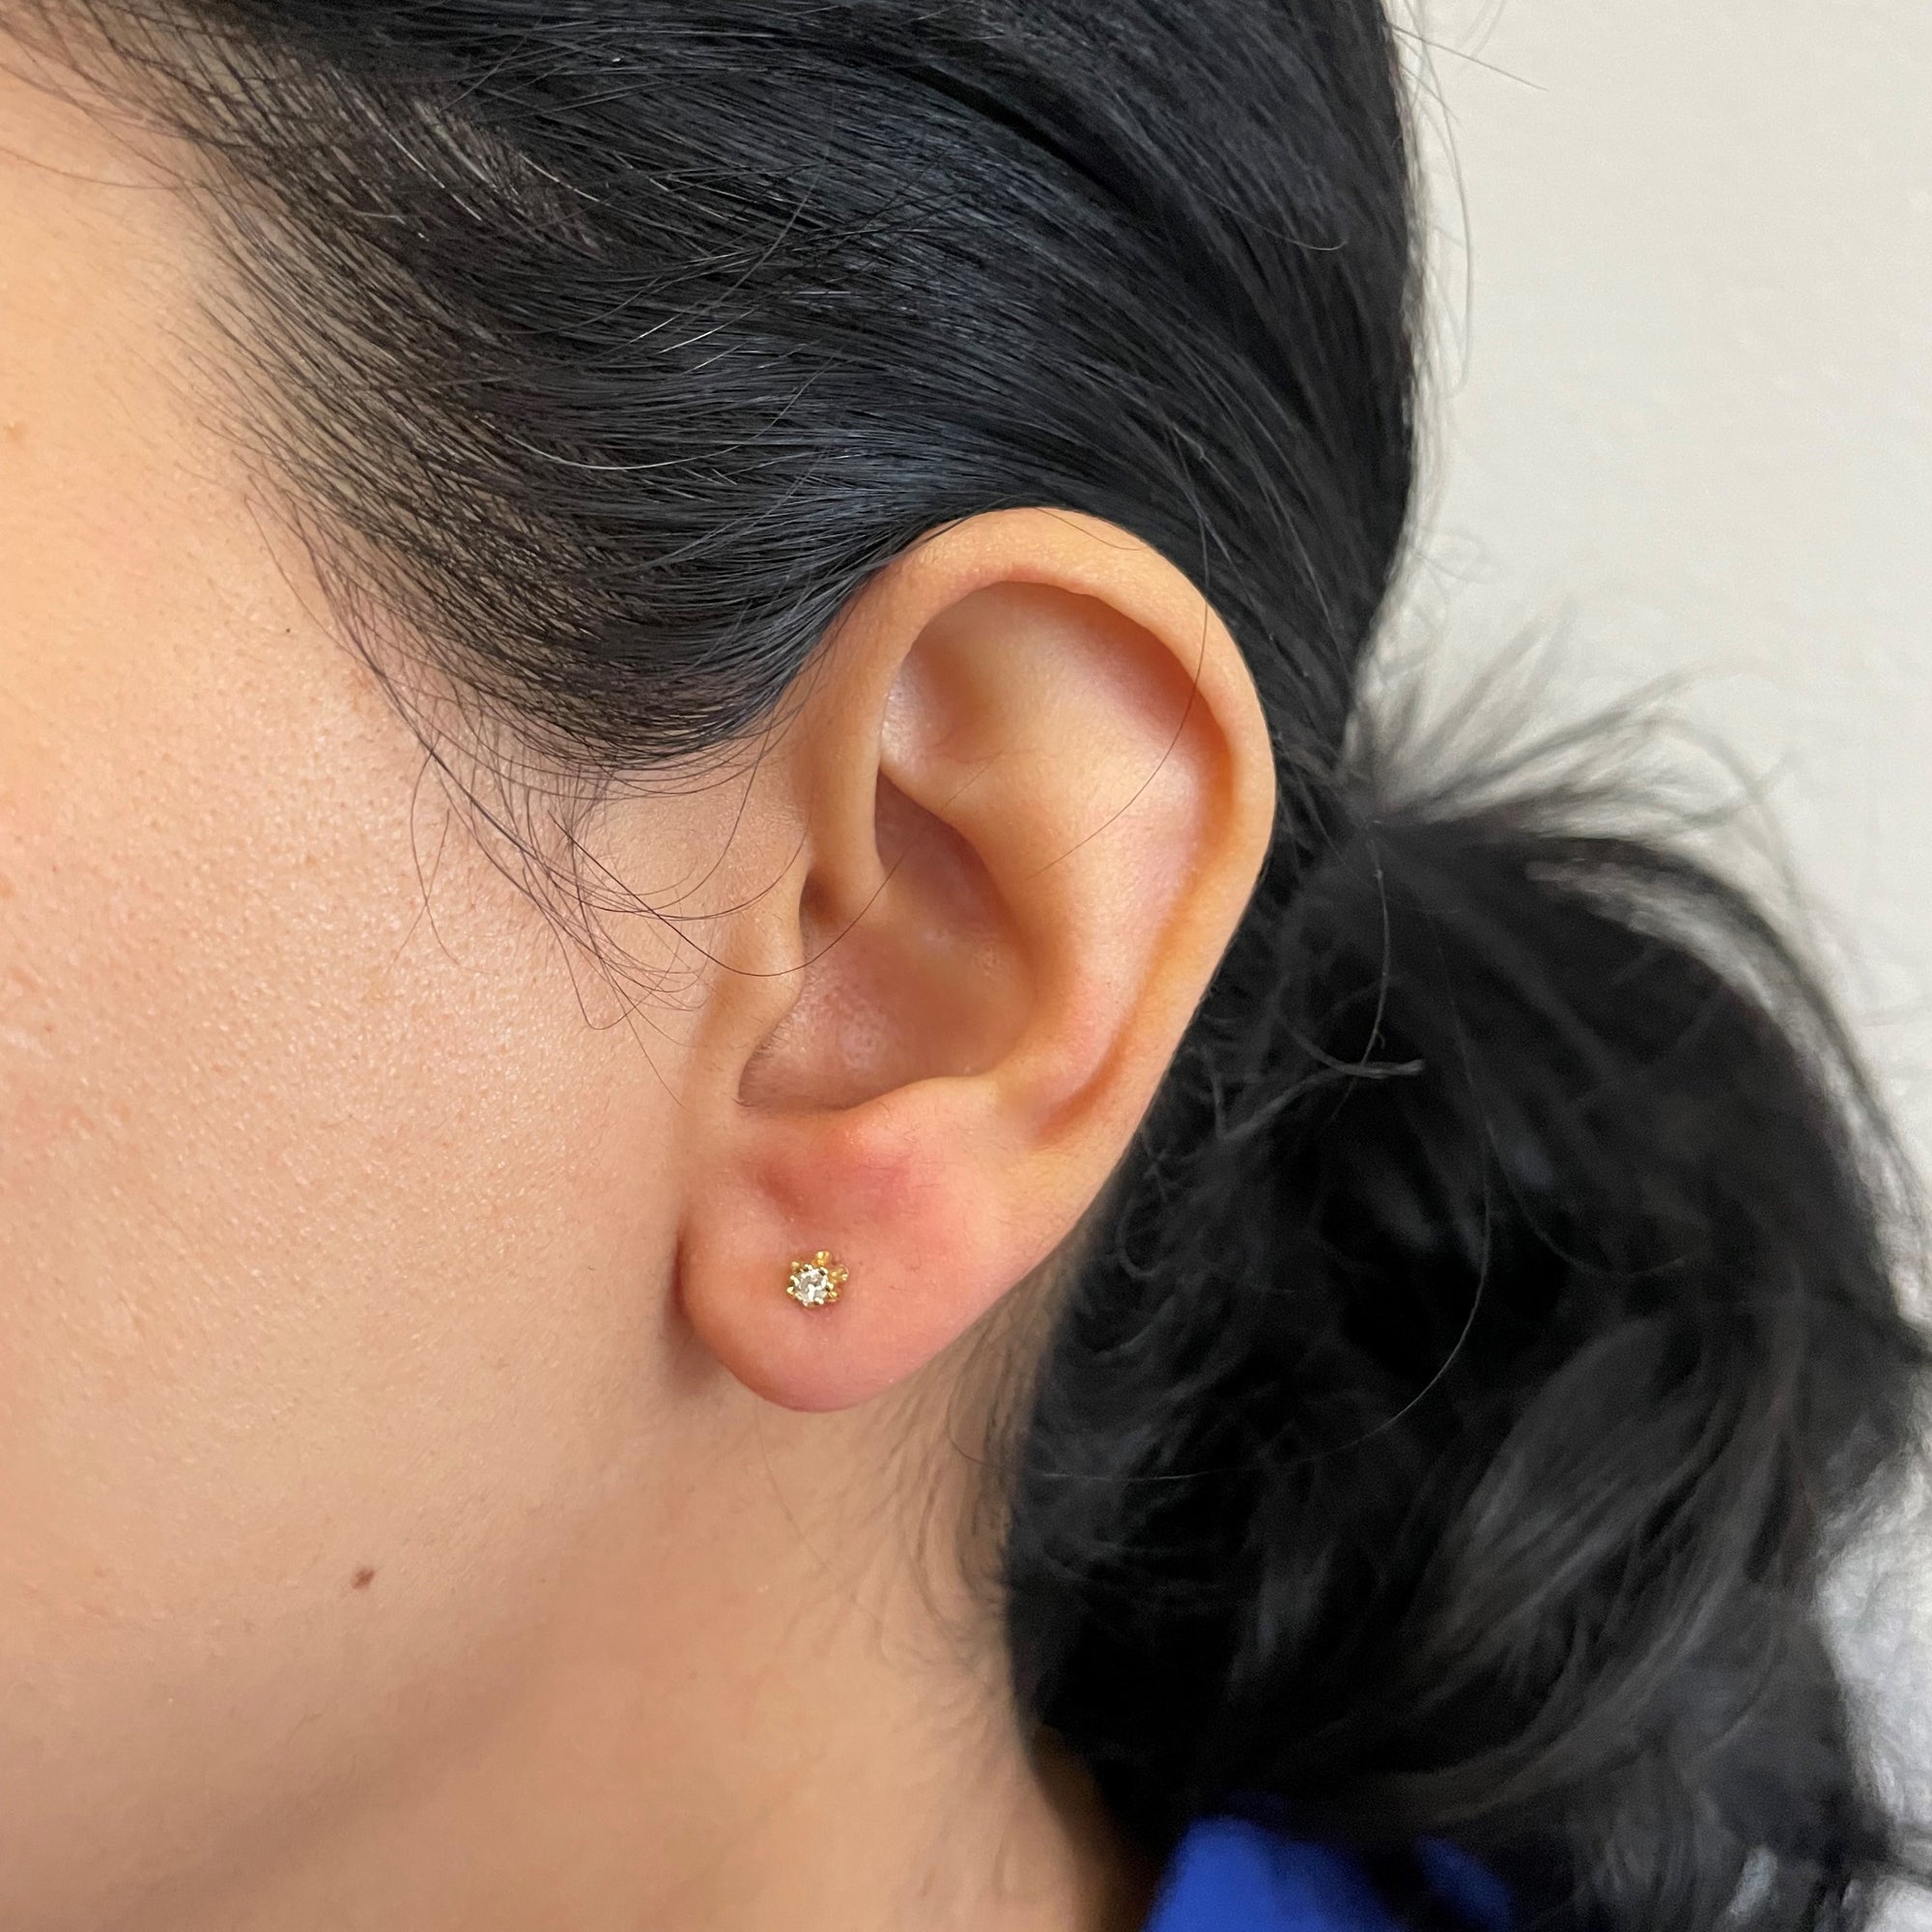 Belcher Set Diamond Stud Earrings | 0.09tw |